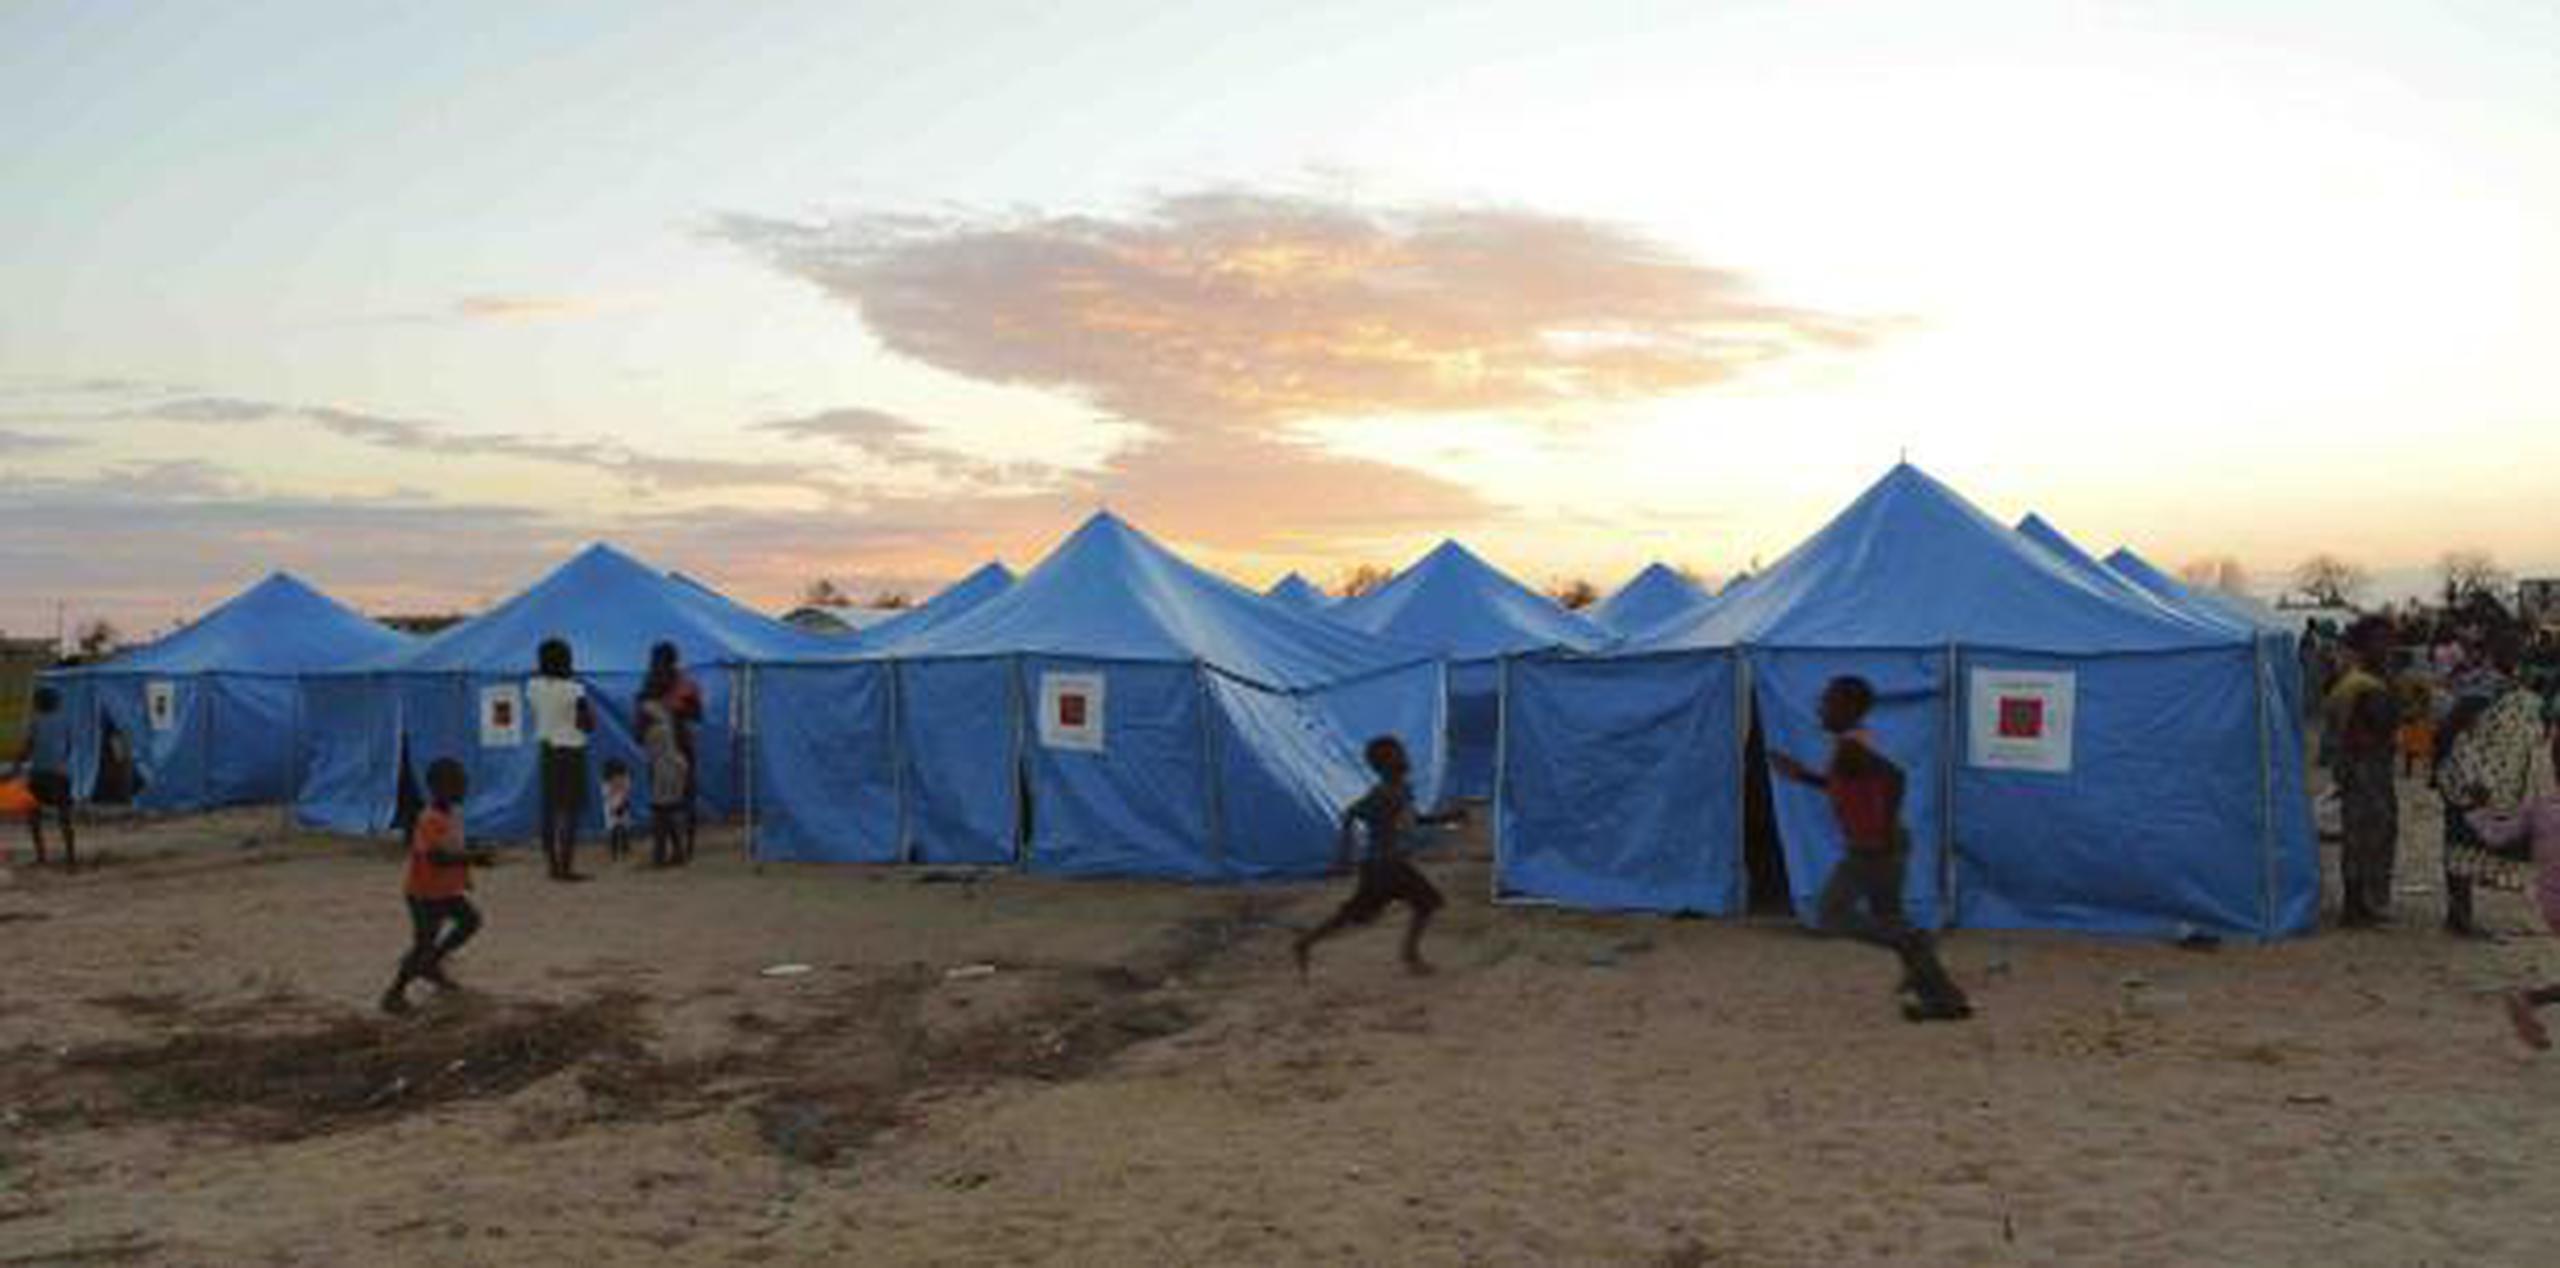 Mujeres y los niños son vistos fuera de un campamento de desplazados en Beira, Mozambique. (AP / Tsvangirayi Mukwazhi)